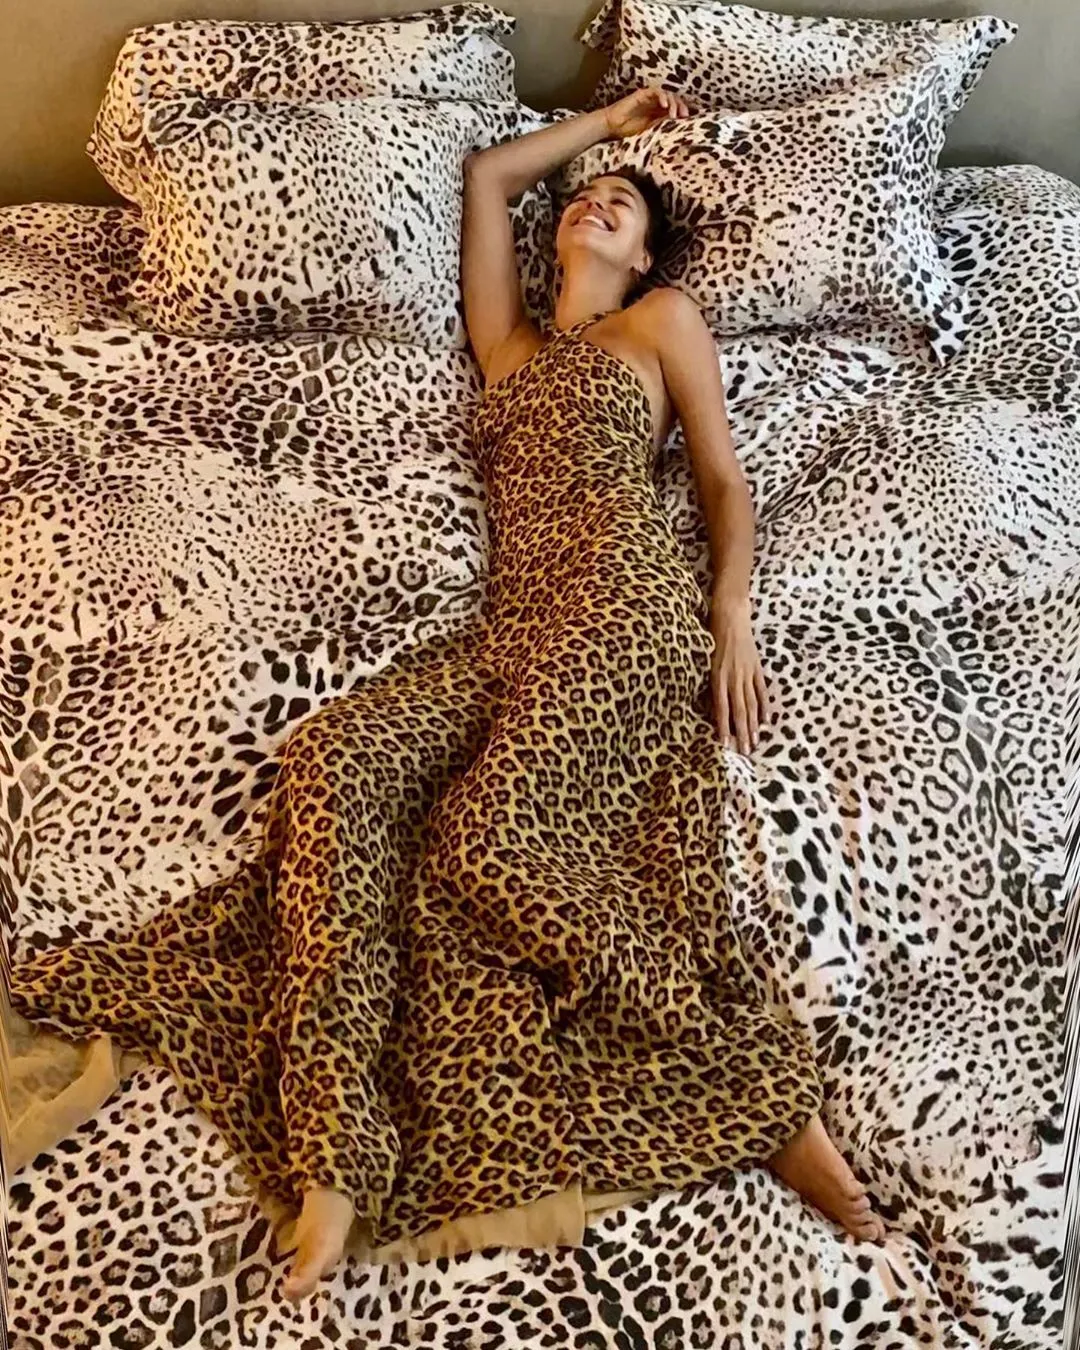 Ірина Шейк у сукні з леопардовим принтом